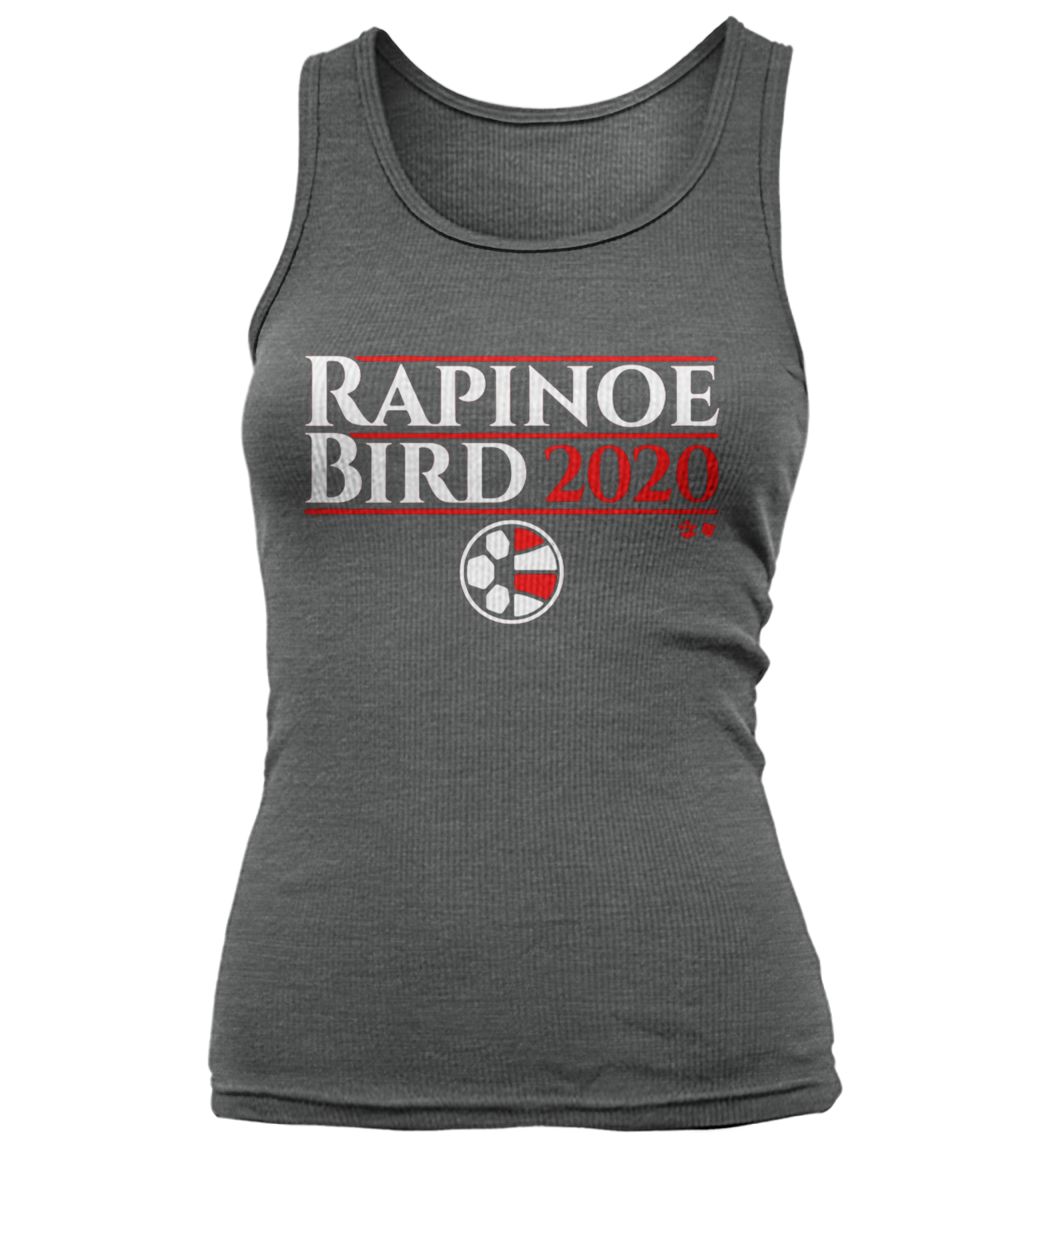 Rapinoe bird 2020 megan rapinoe women's tank top